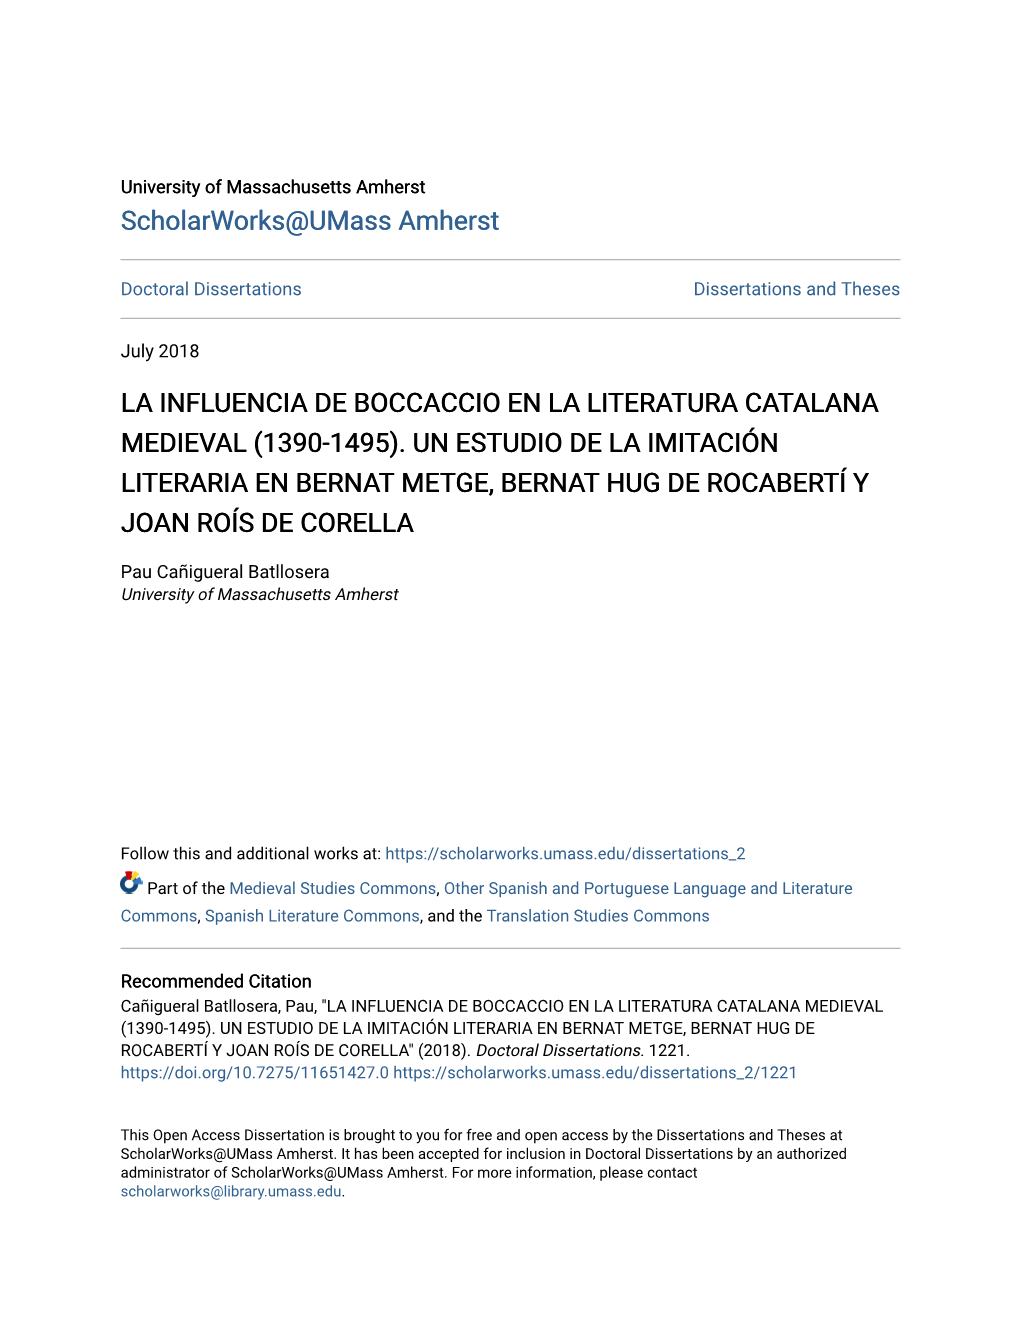 Un Estudio De La Imitación Literaria En Bernat Metge, Bernat Hug De Rocabertí Y Joan Roís De Corella